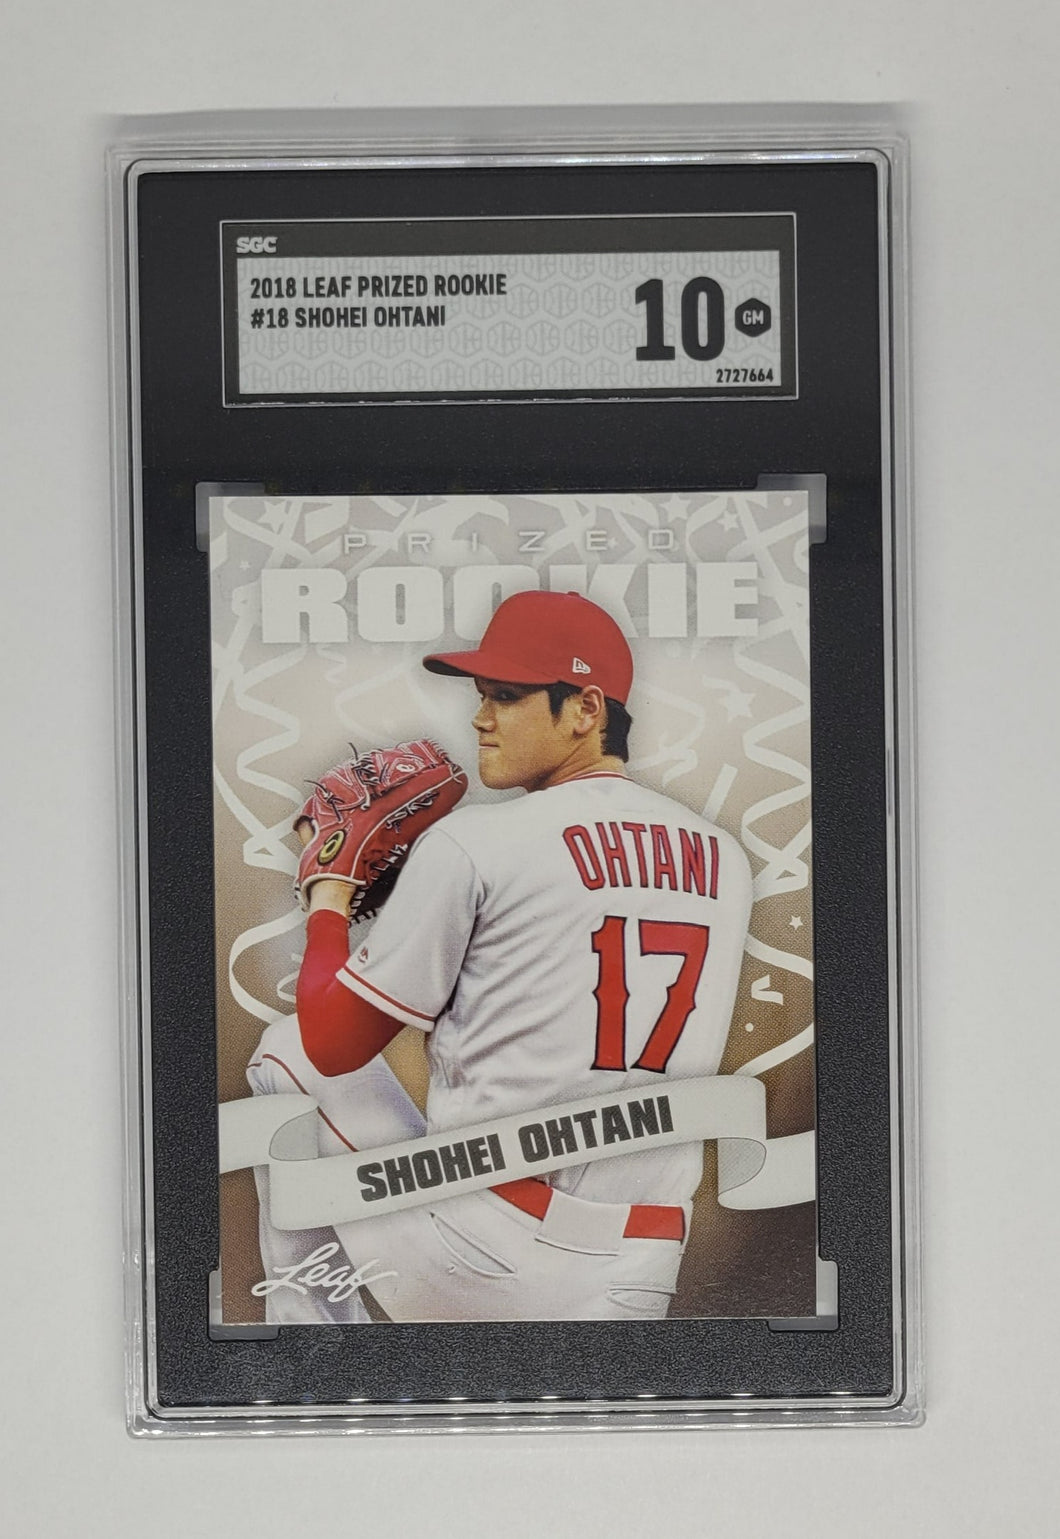 2018 Leaf Prized Rookie Shohei Ohtani Rookie Baseball Card SGC 10